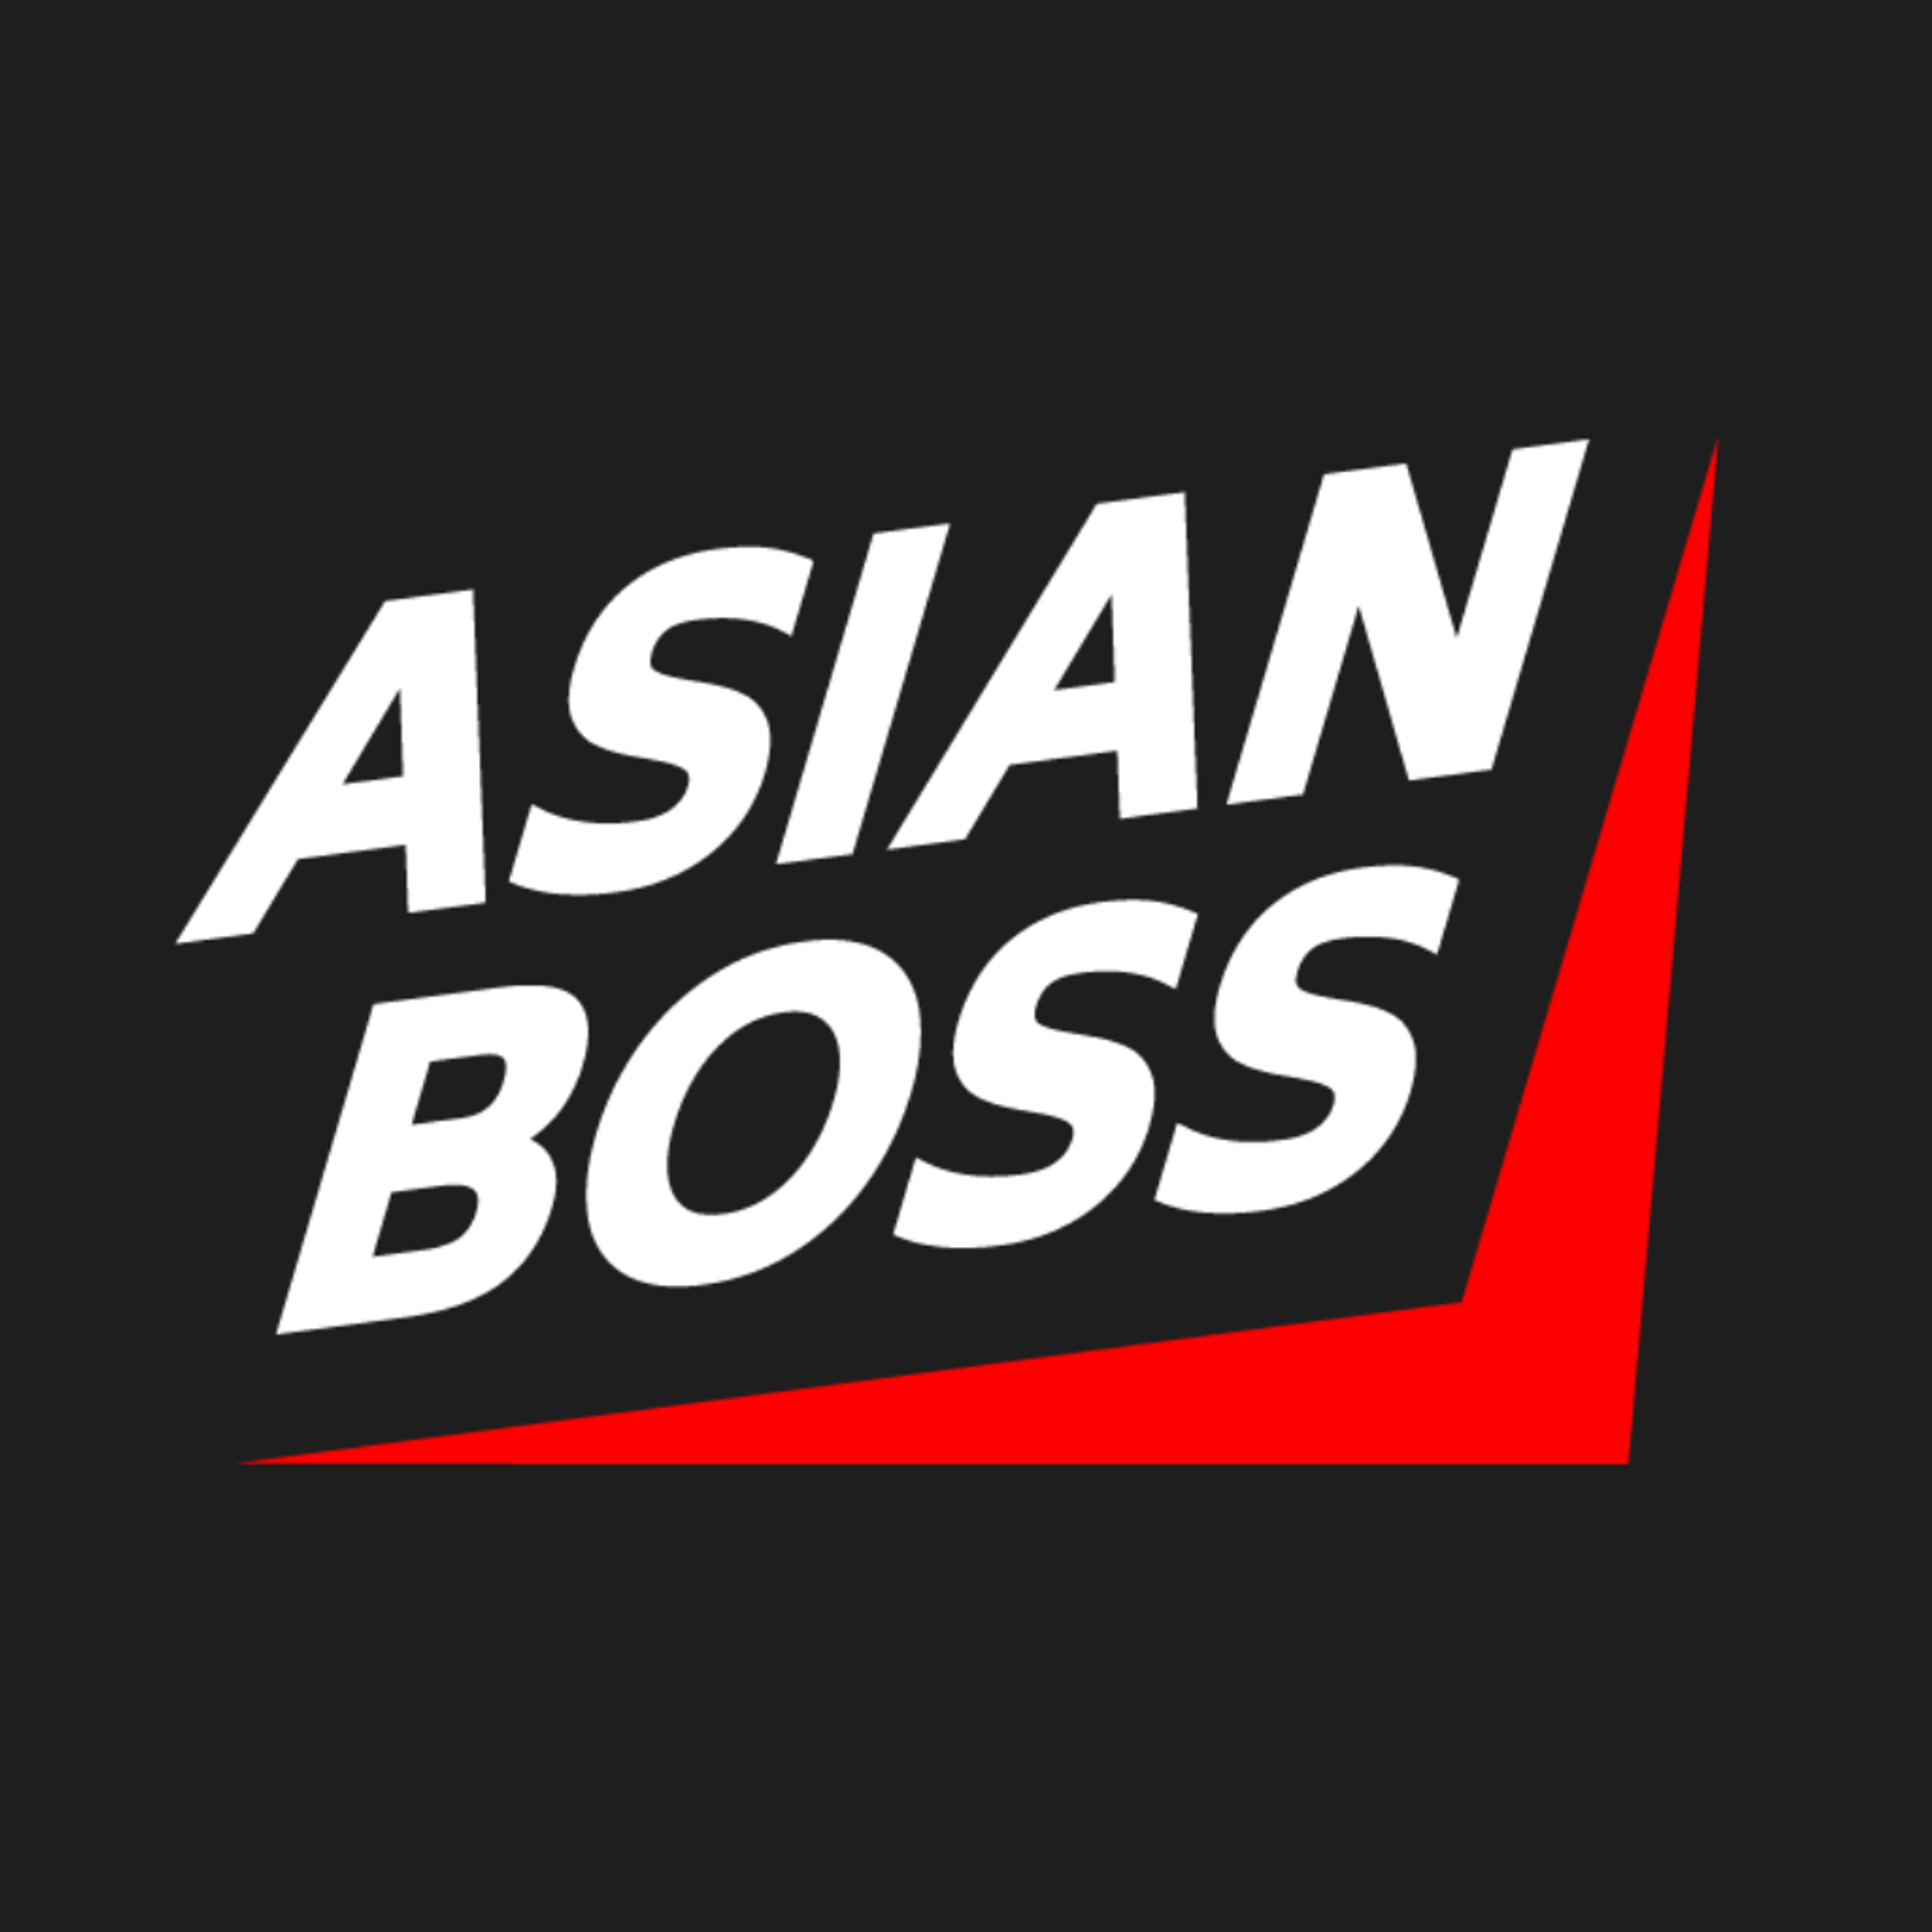 Asian Boss
Jan 2023 · Sep 2023